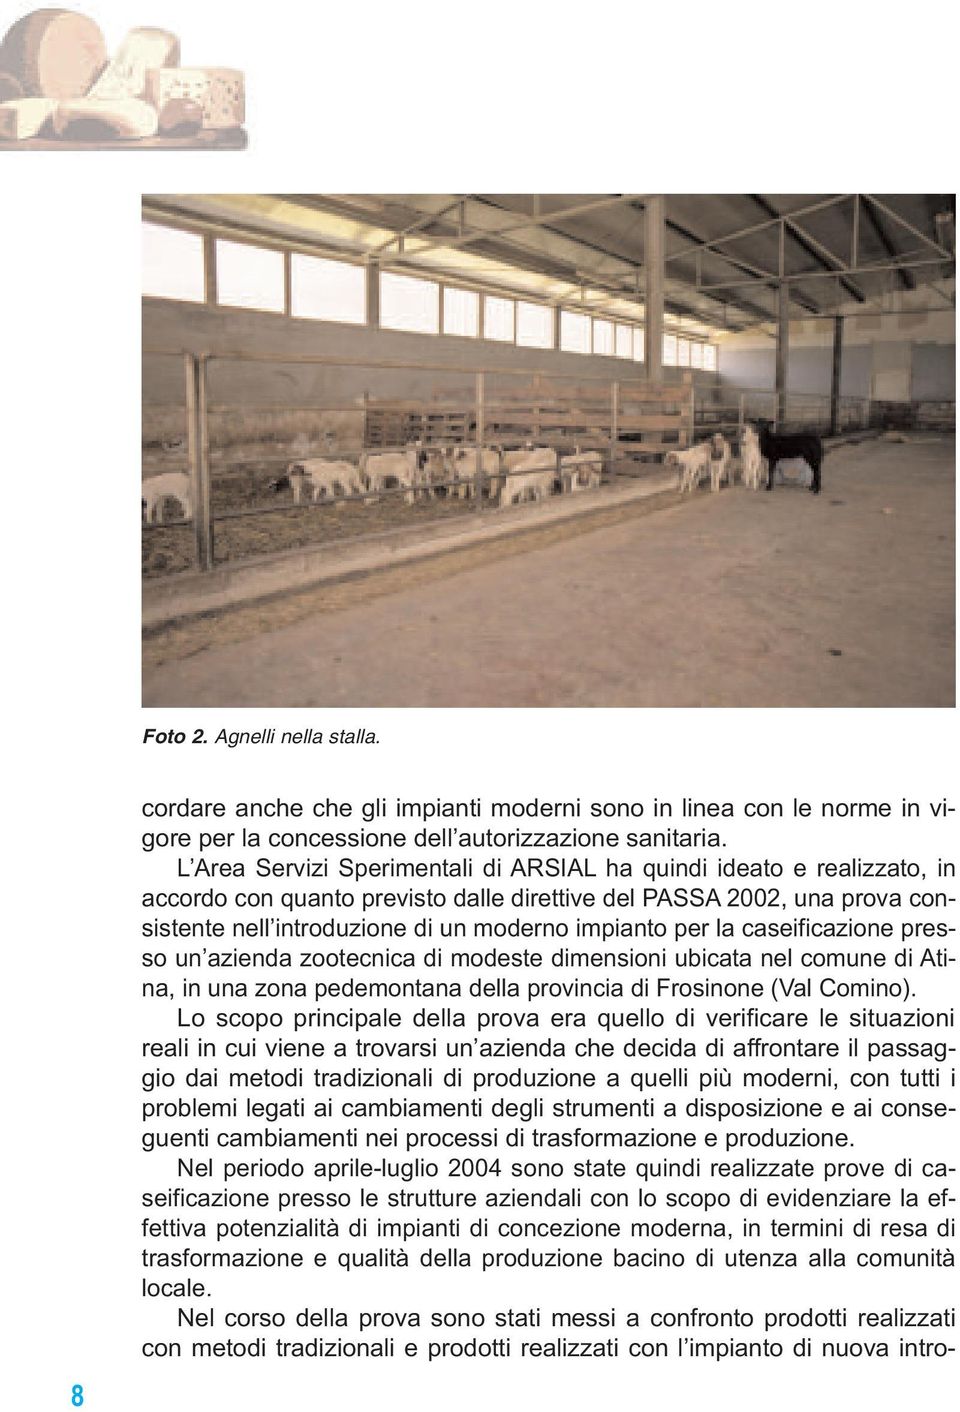 la caseificazione presso un azienda zootecnica di modeste dimensioni ubicata nel comune di Atina, in una zona pedemontana della provincia di Frosinone (Val Comino).